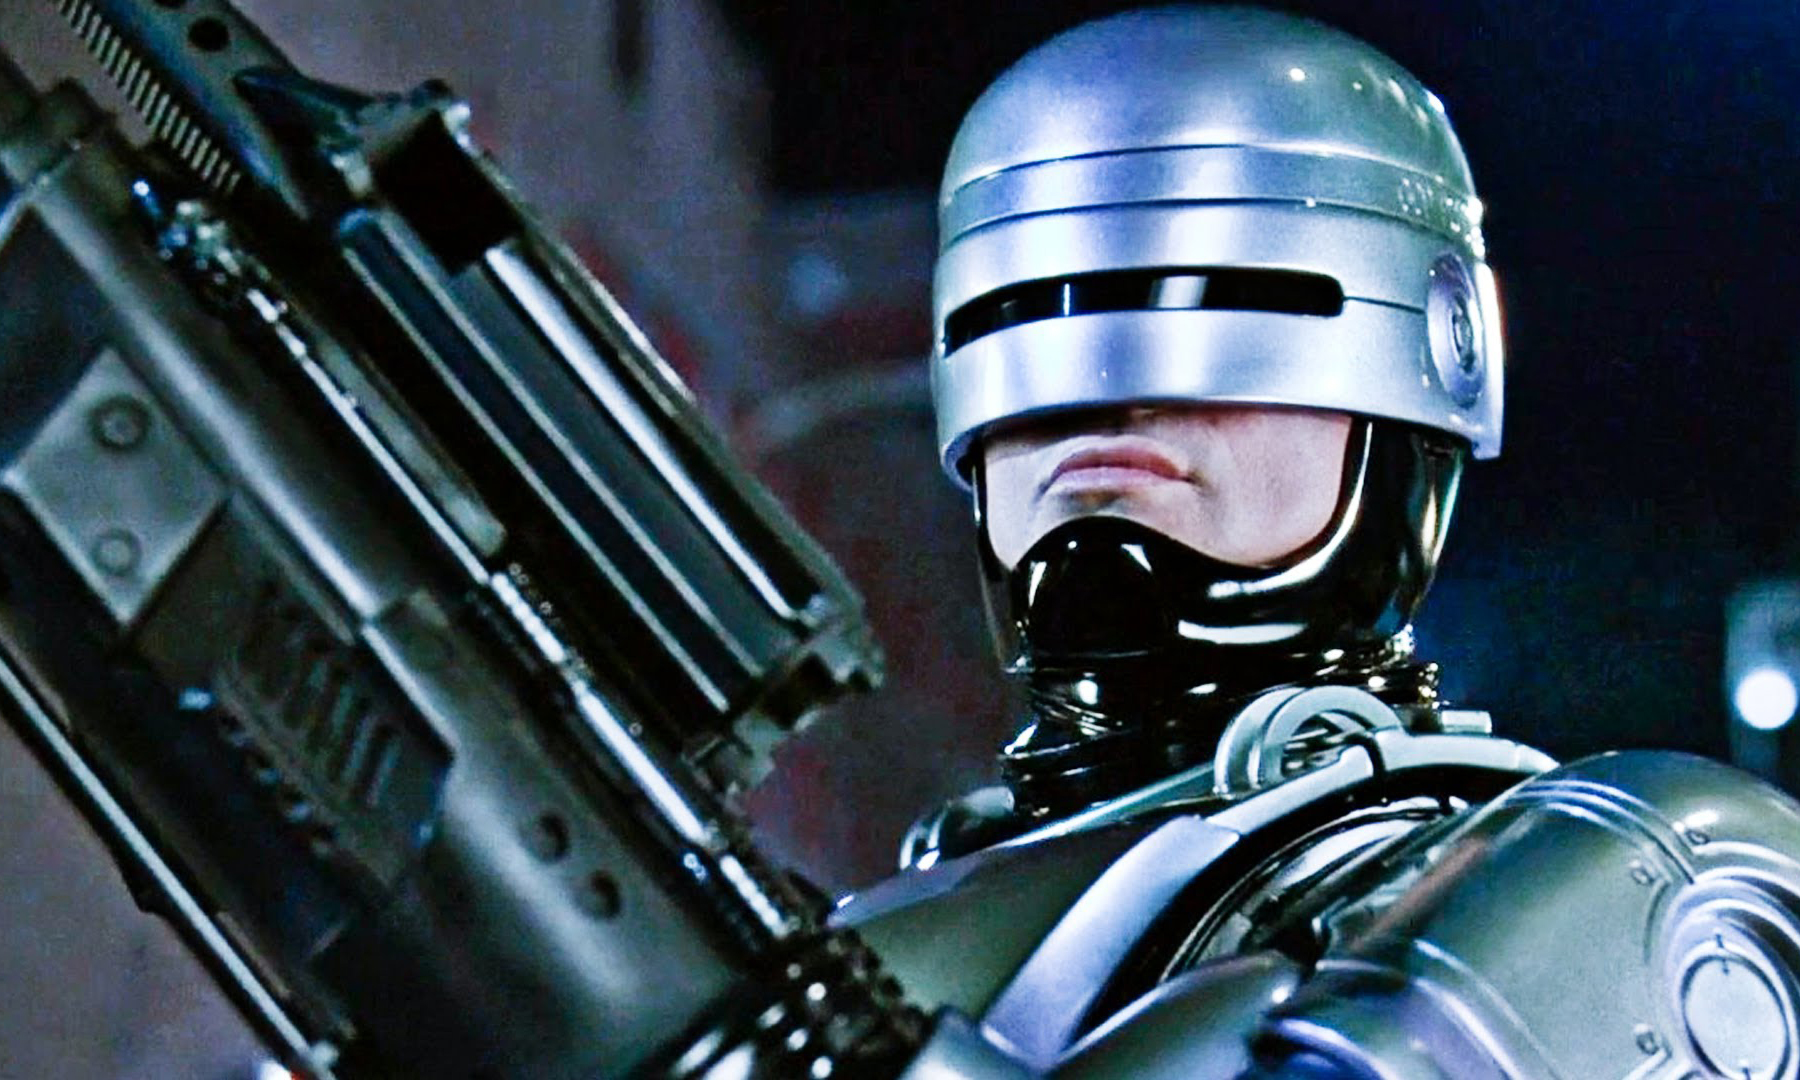 亚马逊宣布重启《机械战警》等经典 IP 电影